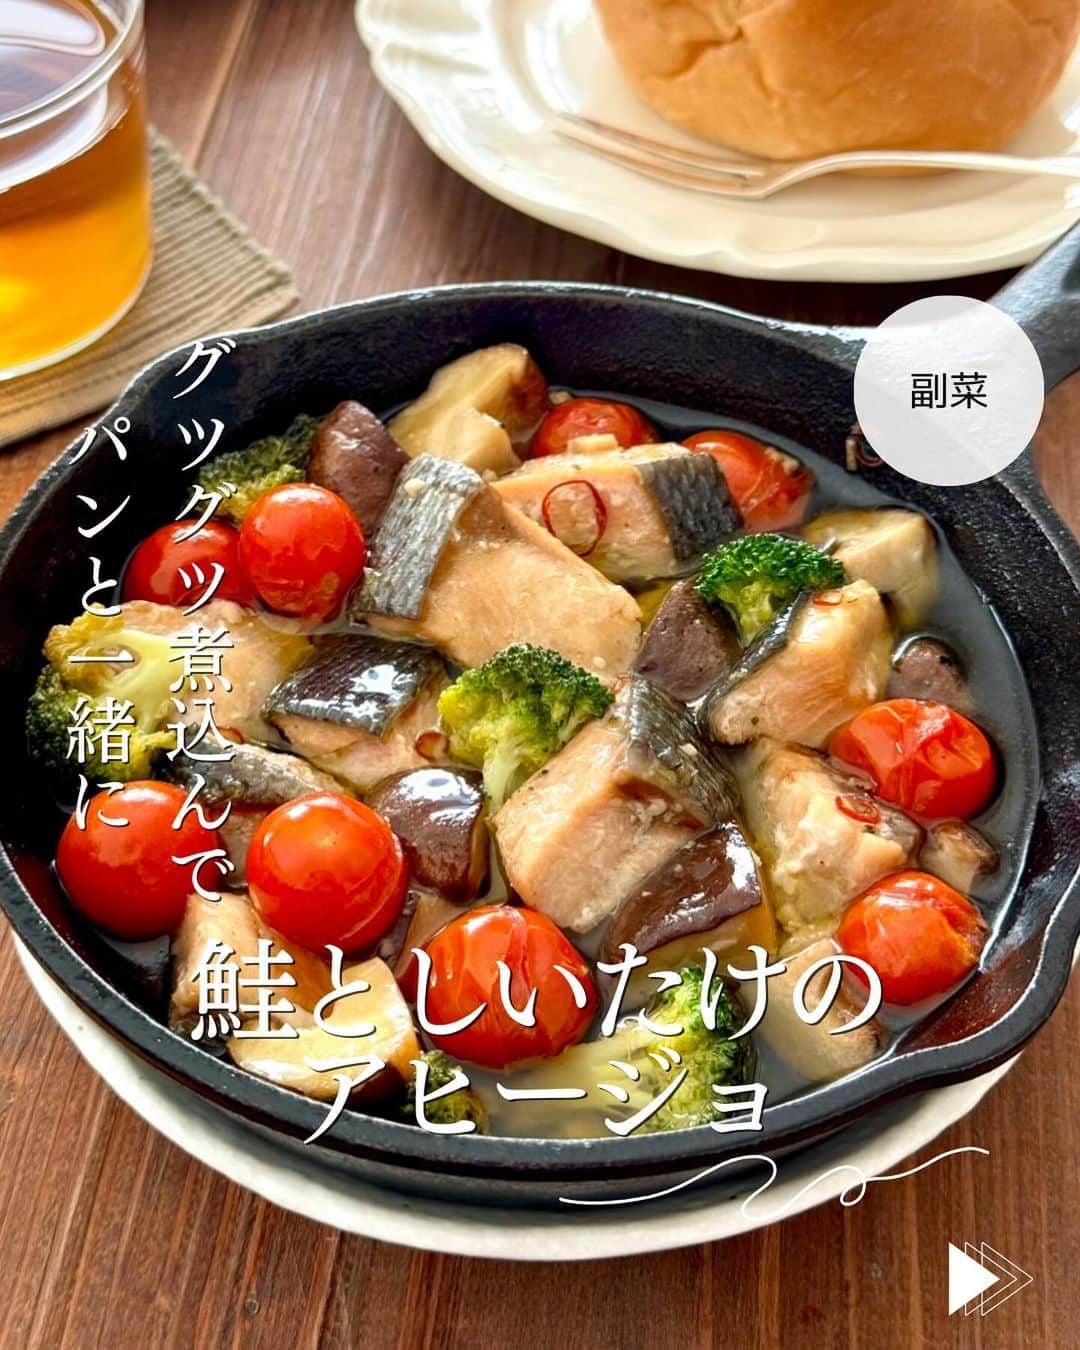 かみじともこのインスタグラム：「☆#鮭としいたけのアヒージョ ☆  @eiyoushino_recipe  🆔レシピID: 7660597  今日のおすすめは 「鮭としいたけのアヒージョ」👩🏻‍🍳2人分です 秋鮭としいたけで、ちょっと和風なアヒージョ。 アヒージョは材料を入れてグツグツ煮込むだけなので とても簡単。スキレットを使えば熱々のままいただけます🍳 お好みで長ねぎを入れてもよく合います。 乾燥バジルを加えたり、マジックソルトなどを使っても美味しい！ ぜひ美味しくできますように☺️  💬💬💬 最後の動画に 鮭ときのこののアヒージョに使用した鮭を載せてます。しゃけの切り身が冷凍で届くので、お弁当に便利で何度も購入しています。骨取りなので食べやすいのもうれしいです。冷凍庫にあると便利でおすすめです！ ストーリーズとハイライトの【おすすめ品】にリンク貼ってますので興味のある方はご覧になってください♪ ＿＿＿＿＿＿＿＿＿＿＿＿＿＿＿＿＿＿＿＿  cookpadに毎日たくさんのつくれぽを ありがとうございます！ みなさんから届いた大切なつくれぽは 私の大切な宝物です🤍 つくれぽ送ってくれるみなさん大好きです😍 ＿＿＿＿＿＿＿＿＿＿＿＿＿＿＿＿＿＿＿＿＿  🍳作られたお料理はぜひ🍳 【 #栄養士のれしぴ 】 【 #栄養士のれしぴのレシピ 】 を付けてくださいね✨ (れしぴはひらがなです✍️) ストーリーズで ご紹介させていただく事があります♪ ＿＿＿＿＿＿＿＿＿＿＿＿＿＿＿＿＿＿＿＿＿＿  お知らせ❶  YouTubeはじめました ストーリーズ、ハイライトのリンクからどうぞ ▶︎▶︎▶︎ @eiyoushino_recipe  最近の動画では 【絶品！ねぎ塩だれ5選】 【サラダ作りにおすすめのキッキン道具5選】 を紹介しています。 ＿＿＿＿＿＿＿＿＿＿＿＿＿＿＿＿＿＿＿＿＿＿  お知らせ❷  楽天ROOMに 愛用のキッチン用品や、便利な道具 美味しかった物や、食器など載せてます♪ ＿＿＿＿＿＿＿＿＿＿＿＿＿＿＿＿＿＿＿＿＿＿  お知らせ❸  新刊【☆栄養士のれしぴ☆黄金だれ】 宝島社より好評販売中！ ＿＿＿＿＿＿＿＿＿＿＿＿＿＿＿＿＿＿＿＿＿＿＿  #栄養士のれしぴ #栄養士のれしぴのレシピ  #アヒージョ #鮭 #鮭レシピ  #副菜 #簡単副菜 #簡単料理　 #基本の料理　 #基本のレシピ　 #家庭料理　 #定番料理 #おうちごはん #レシピ #簡単レシピ #暮らし #暮らしを楽しむ #クックパッド　 #cookpad #recipe #cooking #料理 #器 #30代　#40代  #50代　#60代 #youtubeはじめました #楽天room」